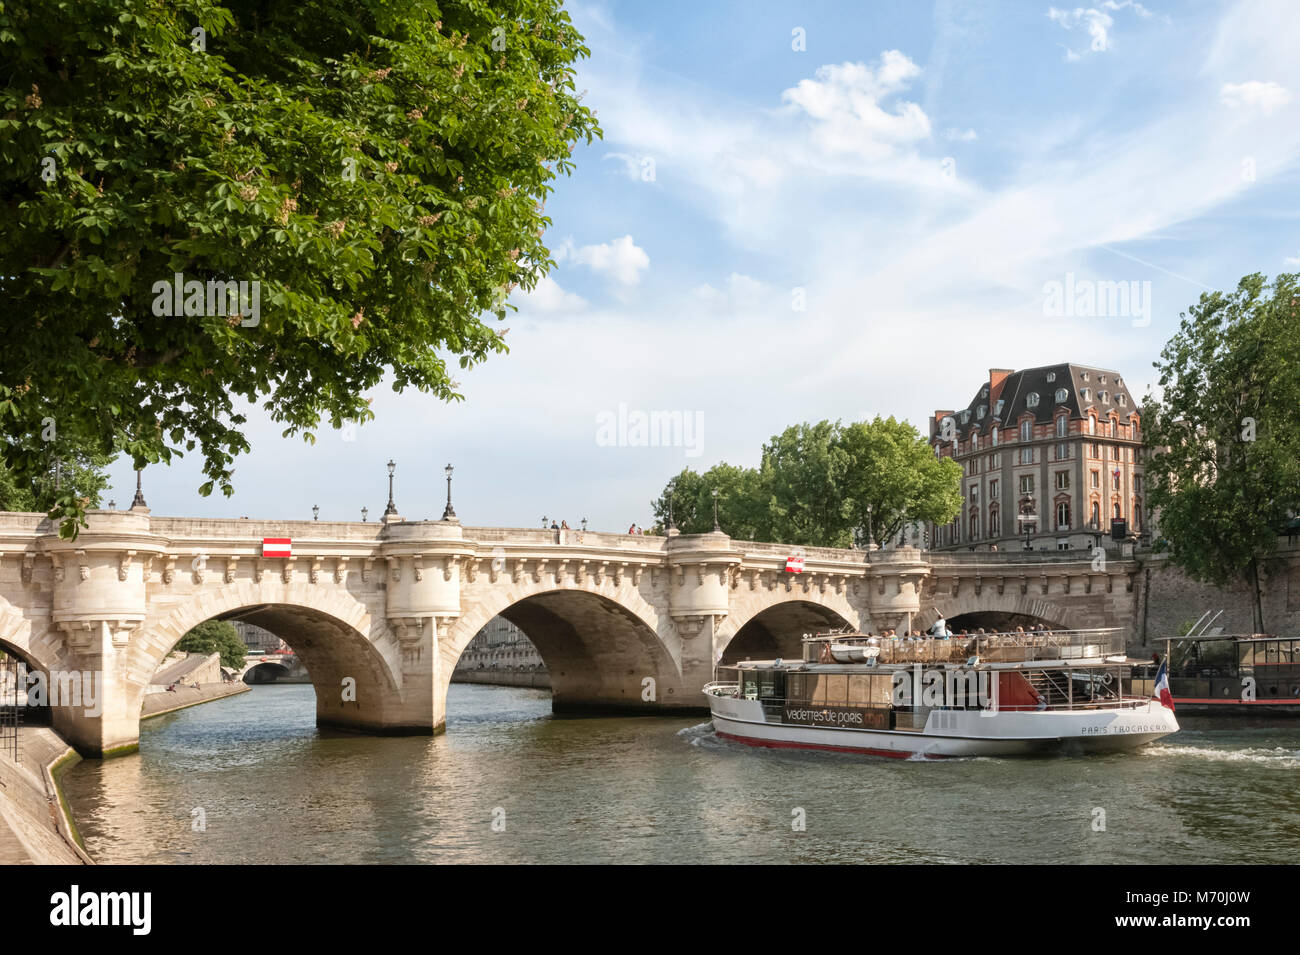 PARIS, FRANKREICH - 06. MAI 2011: Bateaux Mouche Sightseeing Boot auf der seine in Paris nähert sich der Pont Neuf Brücke Stockfoto